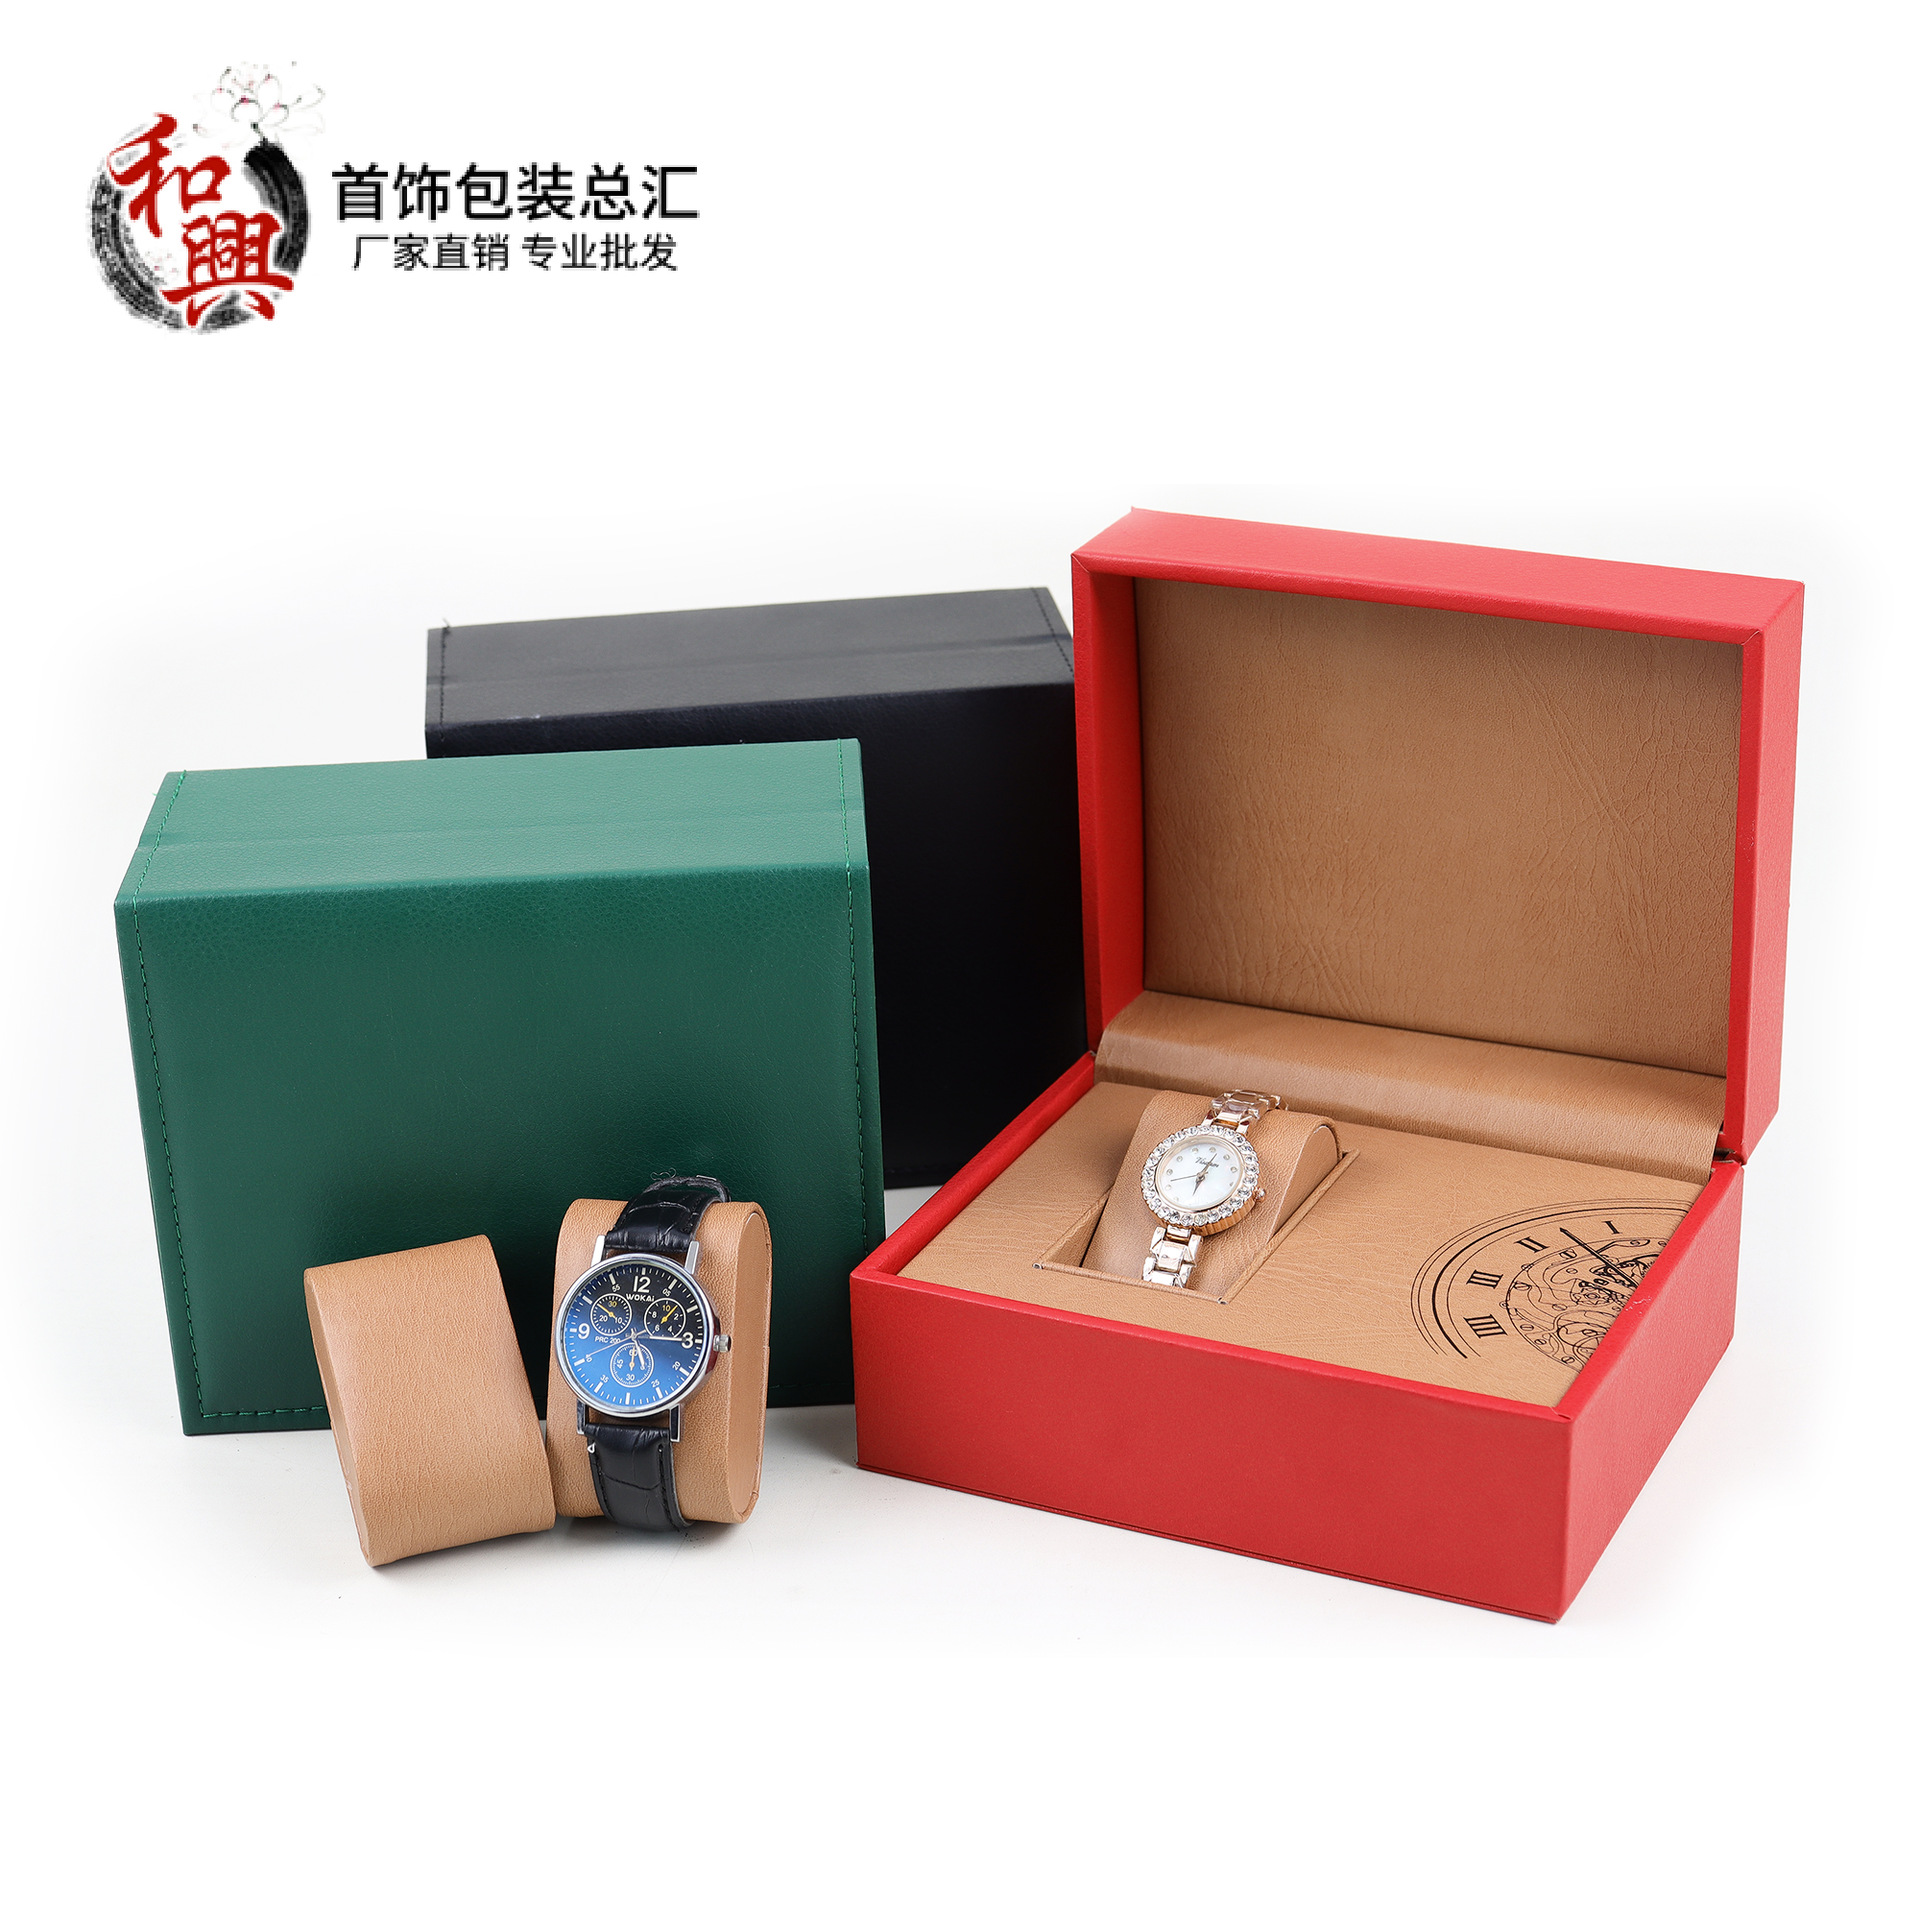 高档直角手表盒PU皮革 腕表展示盒 手表收纳盒礼盒翻盖厂家批发